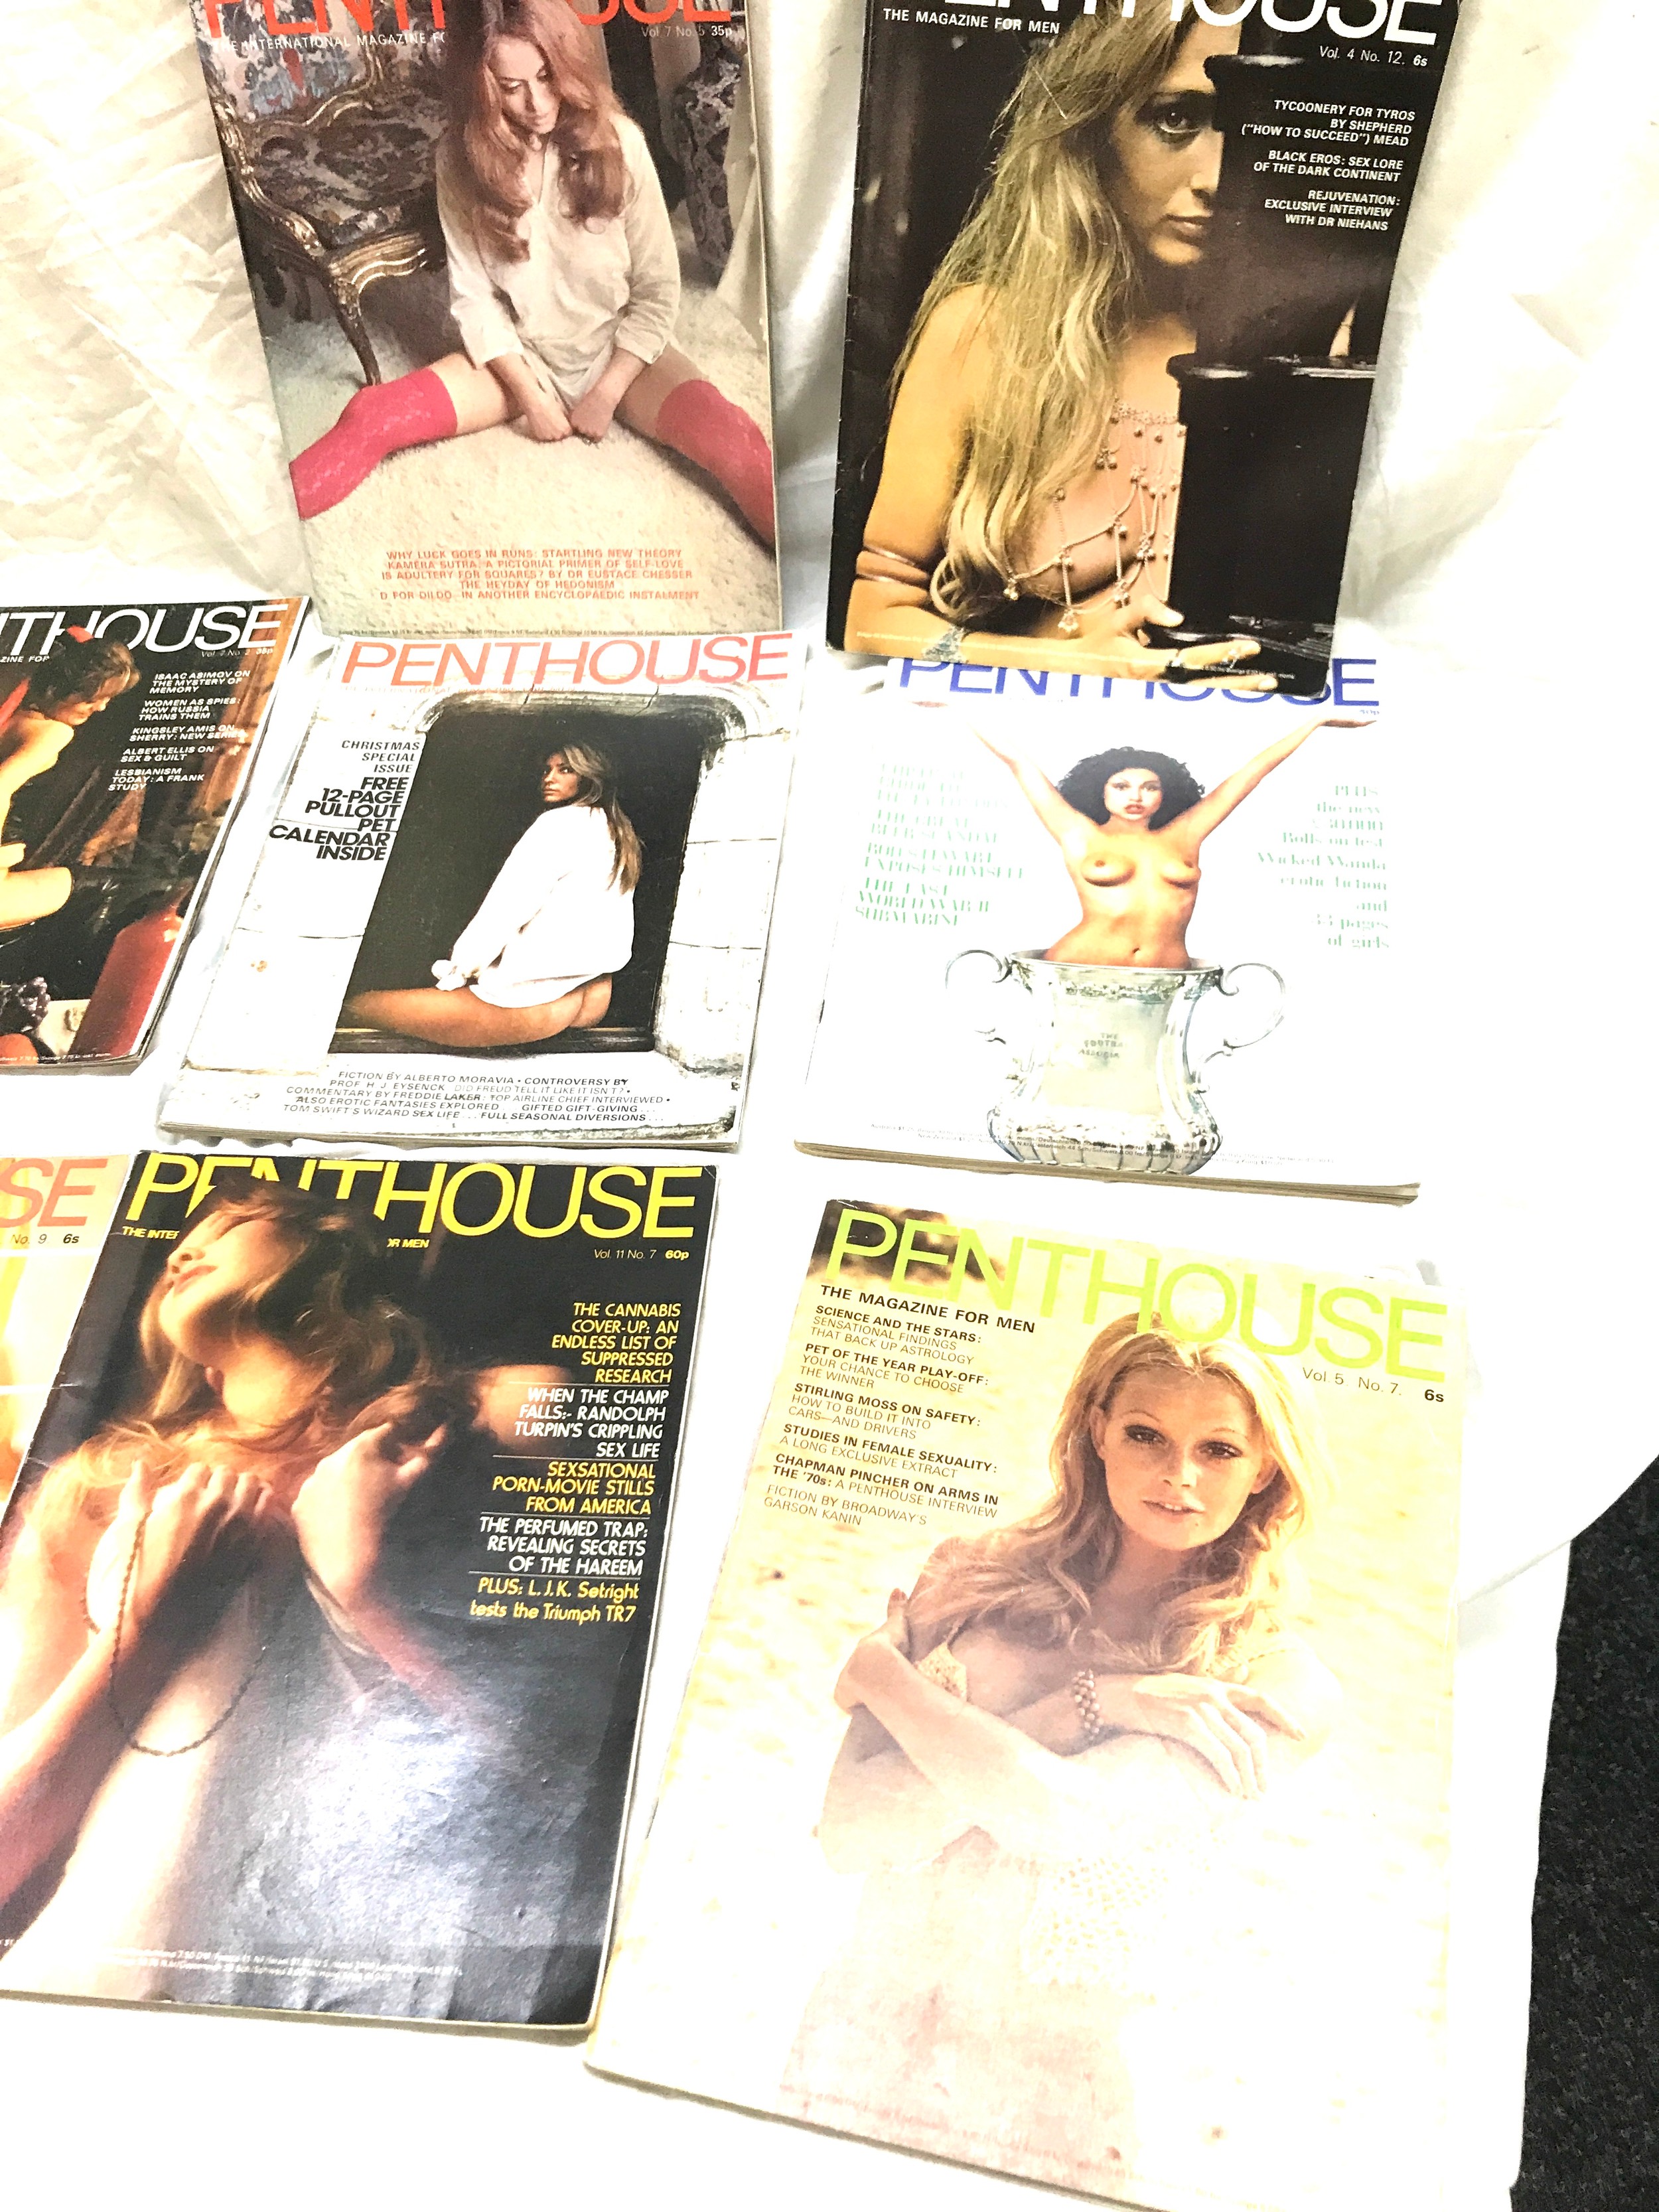 8 Vintage penthouse magazines - Image 2 of 3